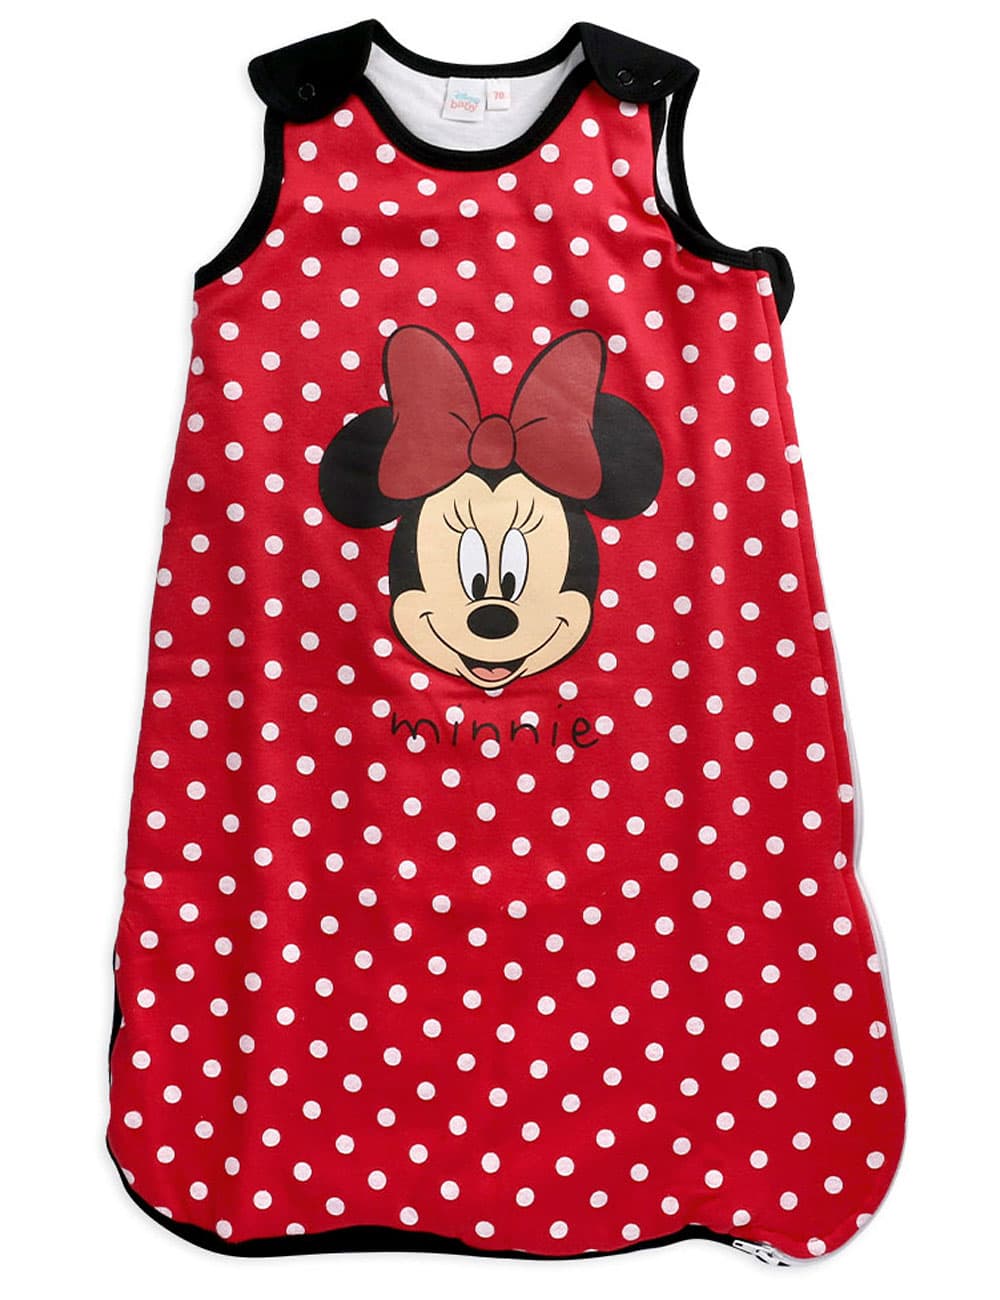 Schlafsack 90 cm Minnie Mouse Disney NEU leicht wattiert rot Punkte Maus baby